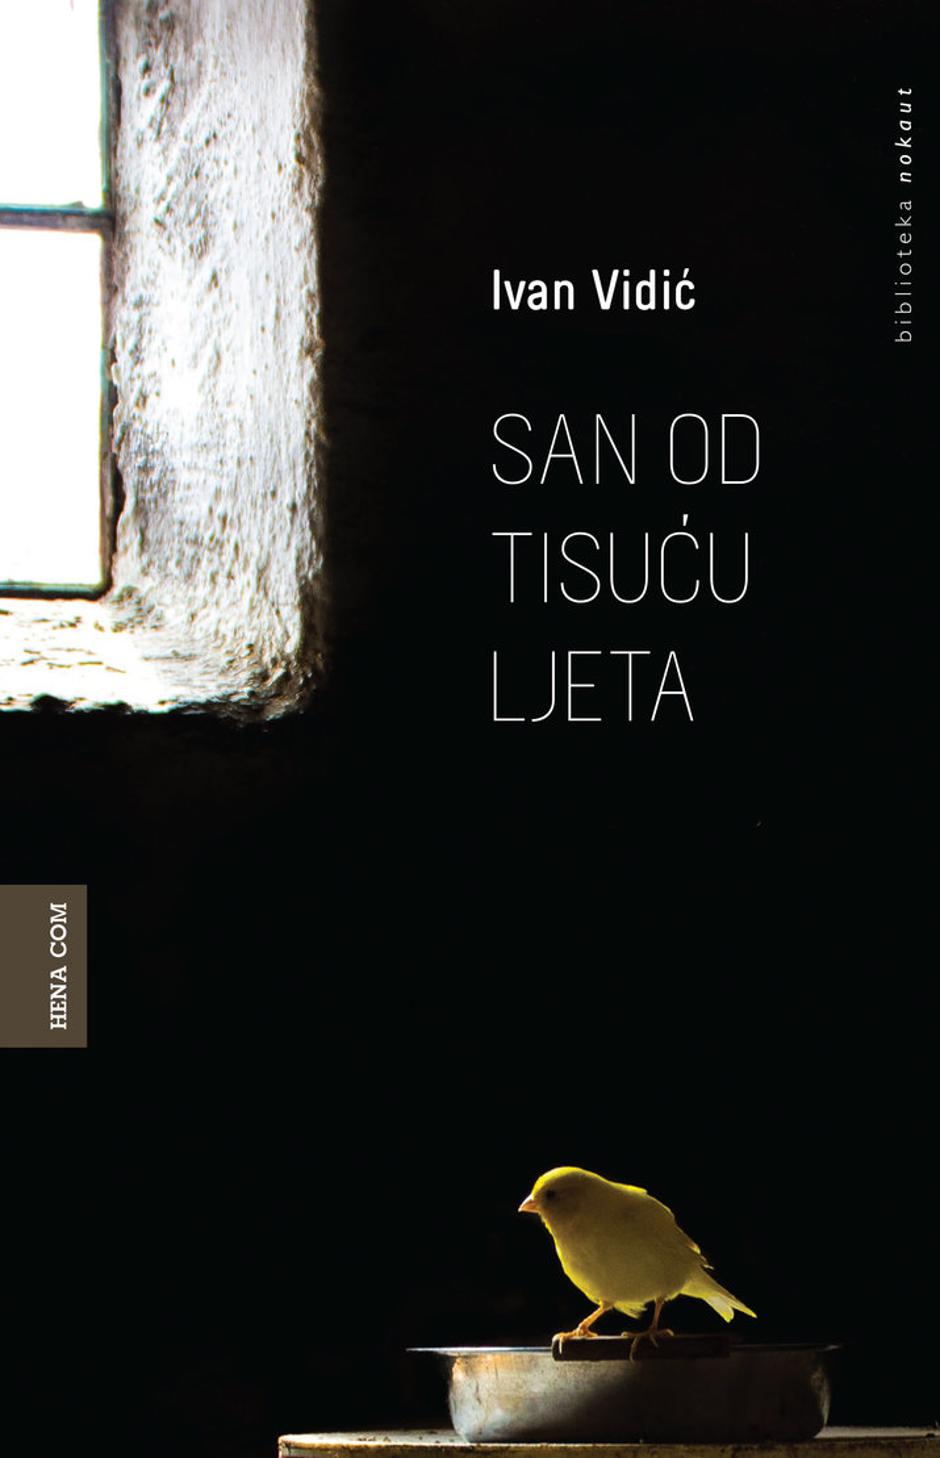 Zbirka priča Ivana Vidića "San od tisuću ljeta" | Author: Hena